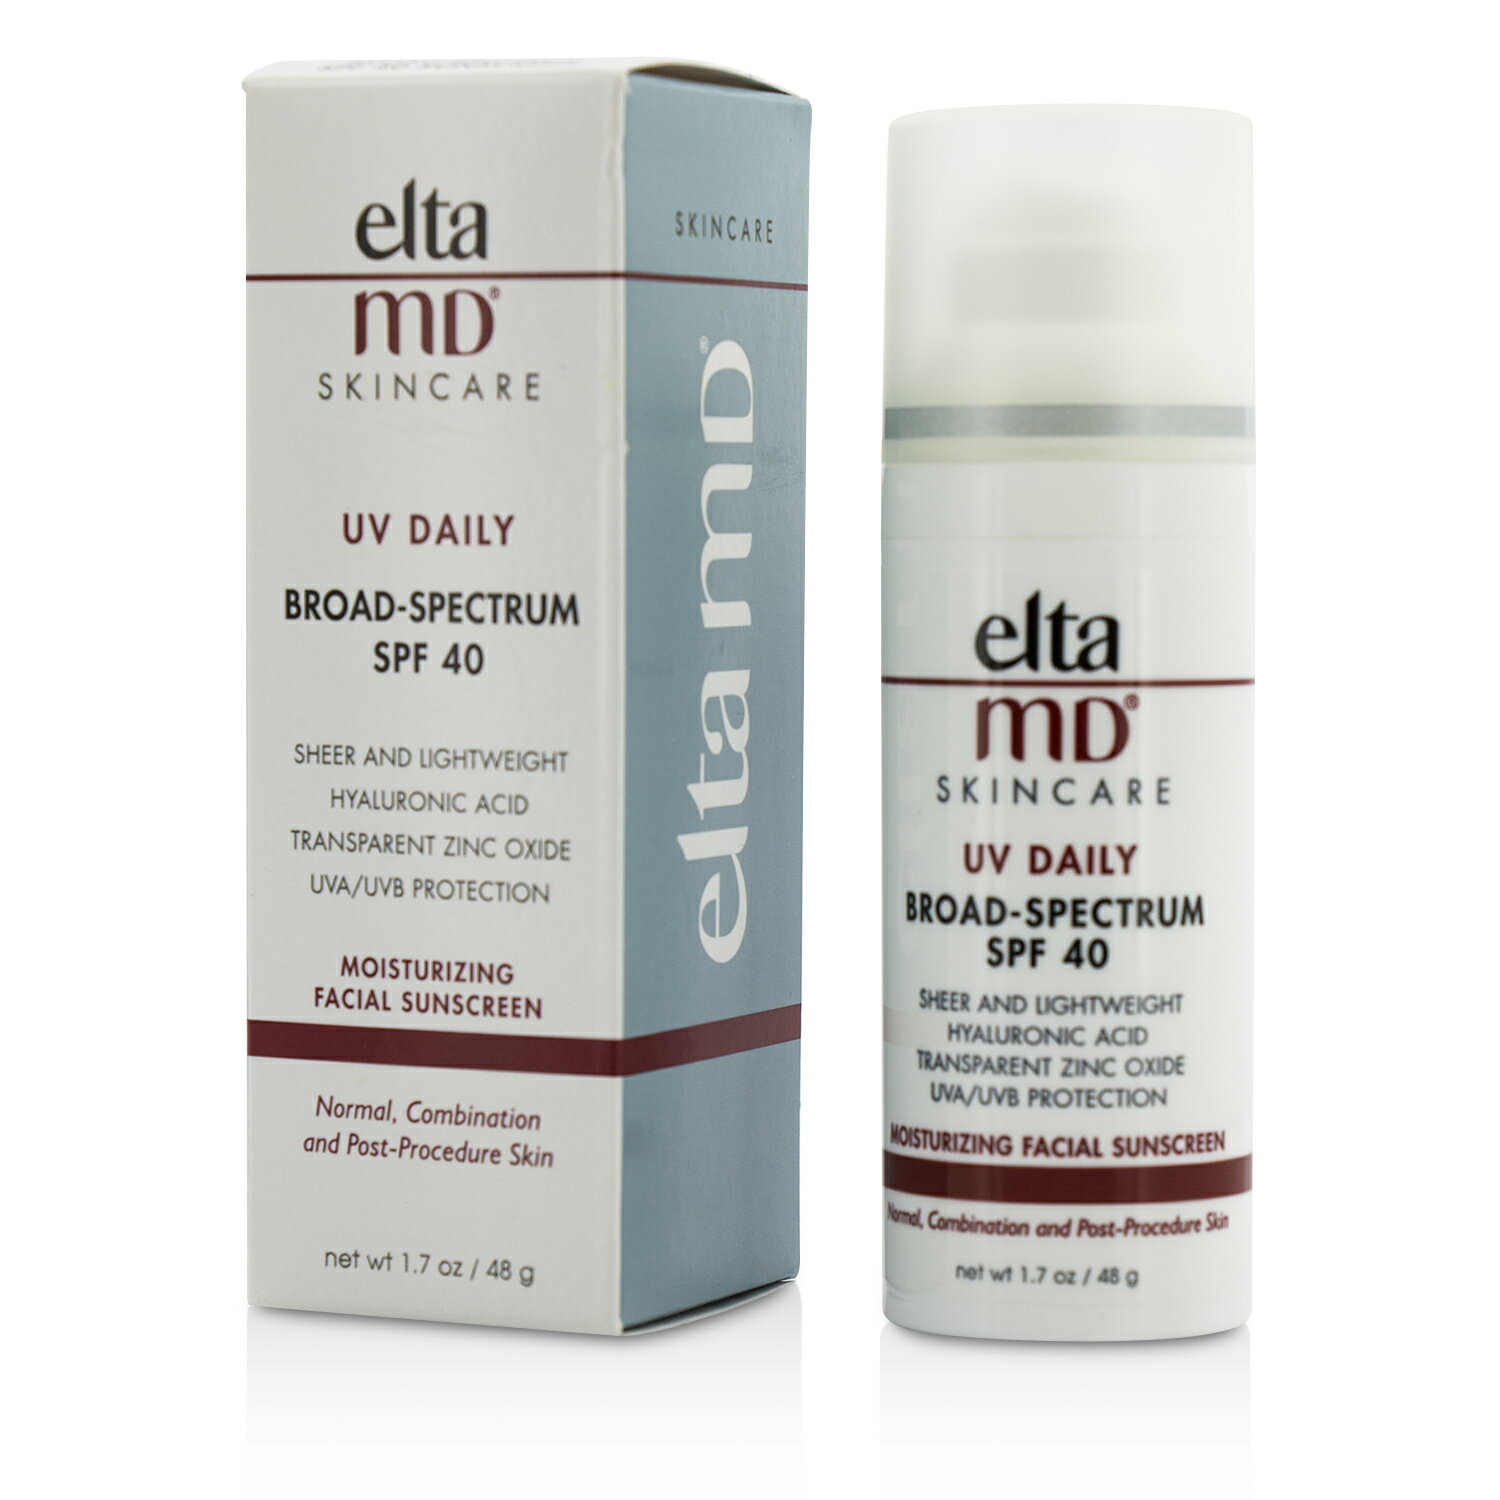 創新專業保養品 EltaMD - 全日修復防曬霜 SPF 40 (適合中性, 混合性和手術後肌膚)